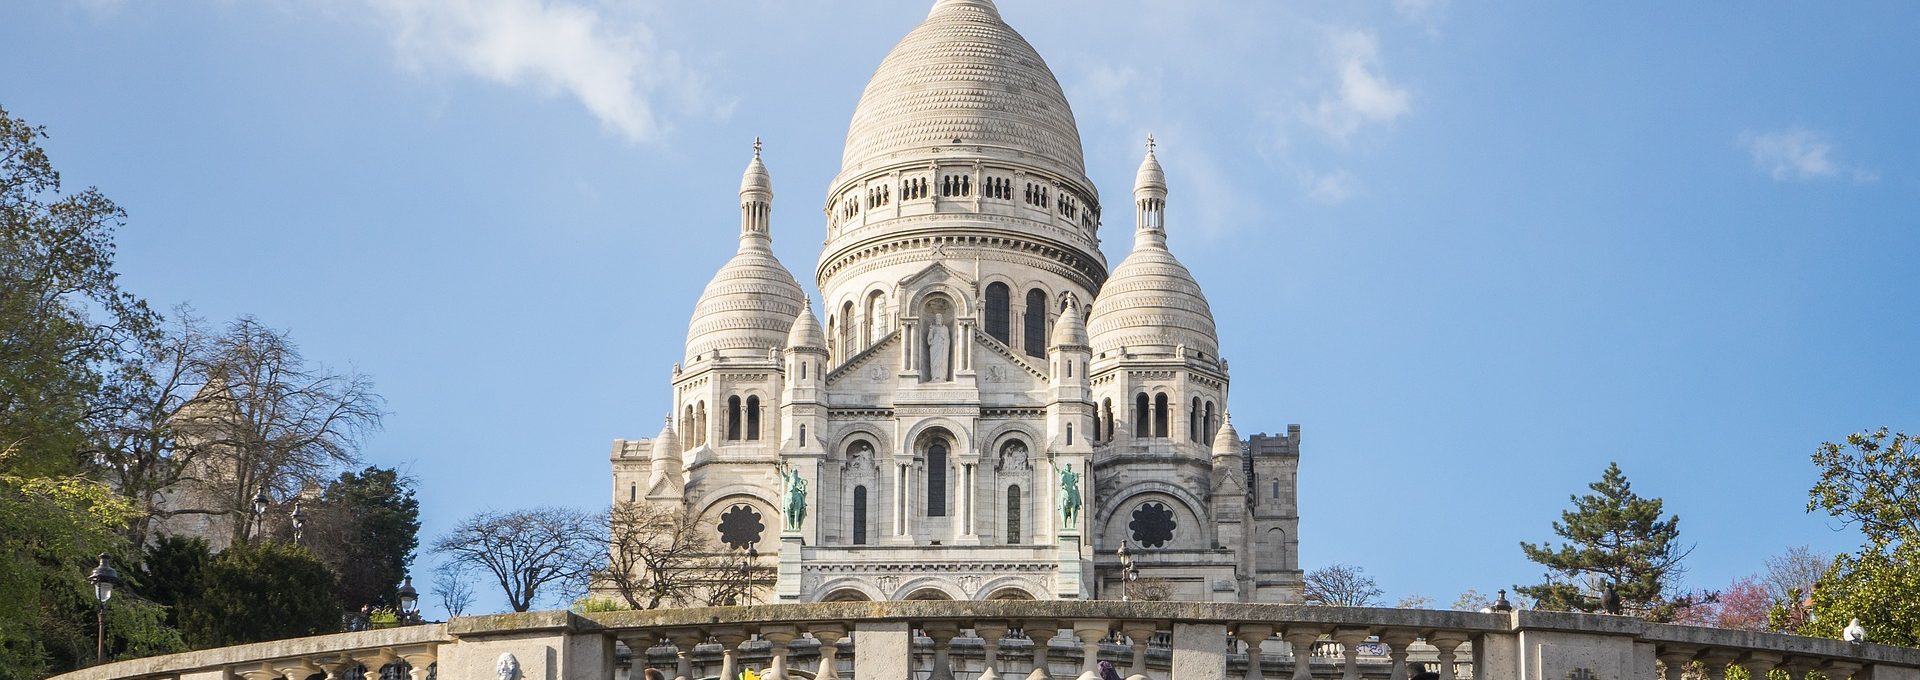 Vista da Basílica Sacré Coeur em Paris